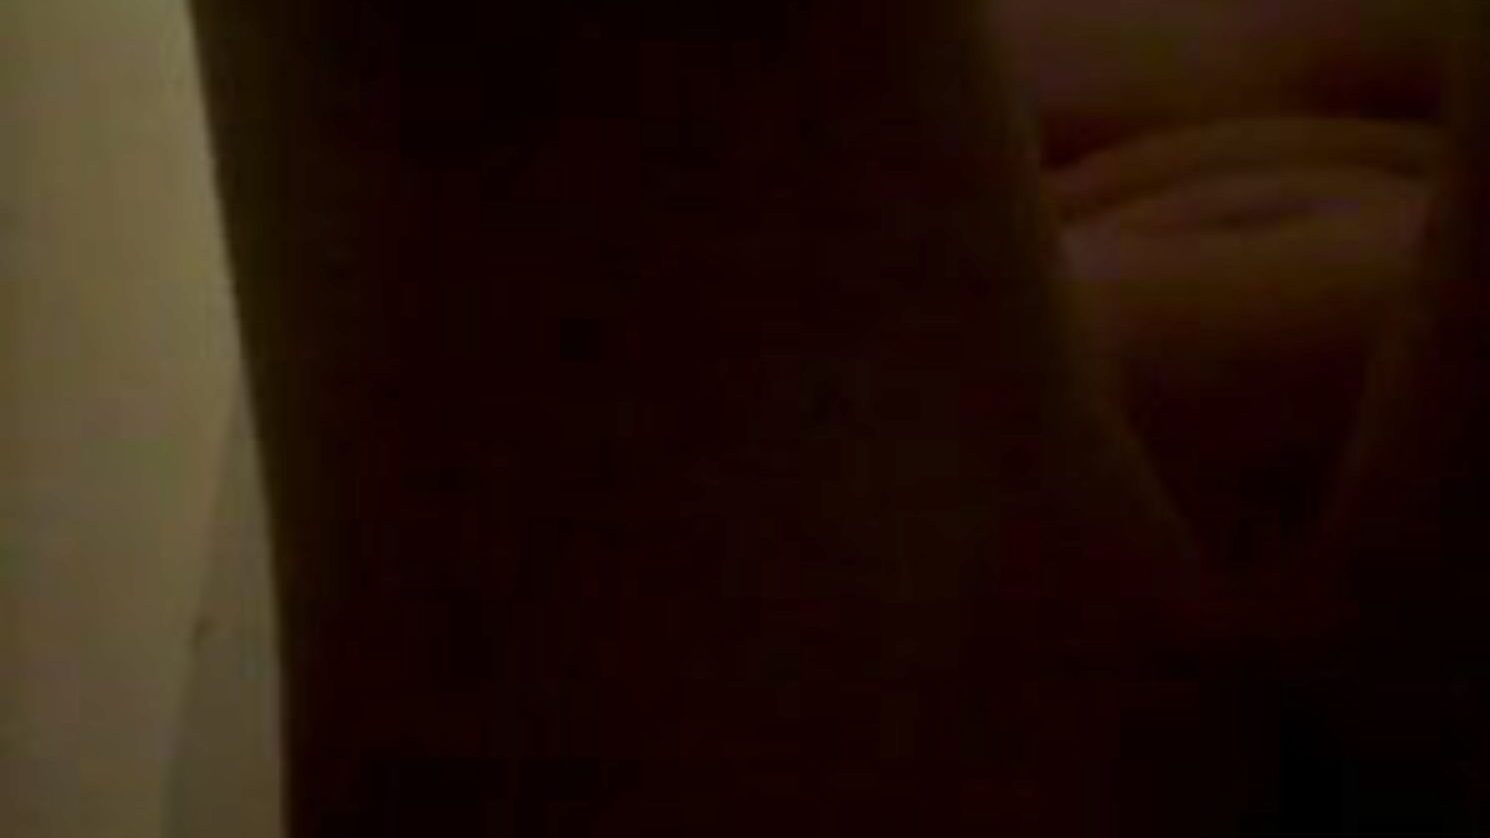 piss et frotte sur le corps, darmowe pee porn 45: xhamster oglądaj piss et frotte sur le corps clip on xhamster, najgrubsza strona z kanałami orgii z mnóstwem sikań i domowych scen z filmów porno